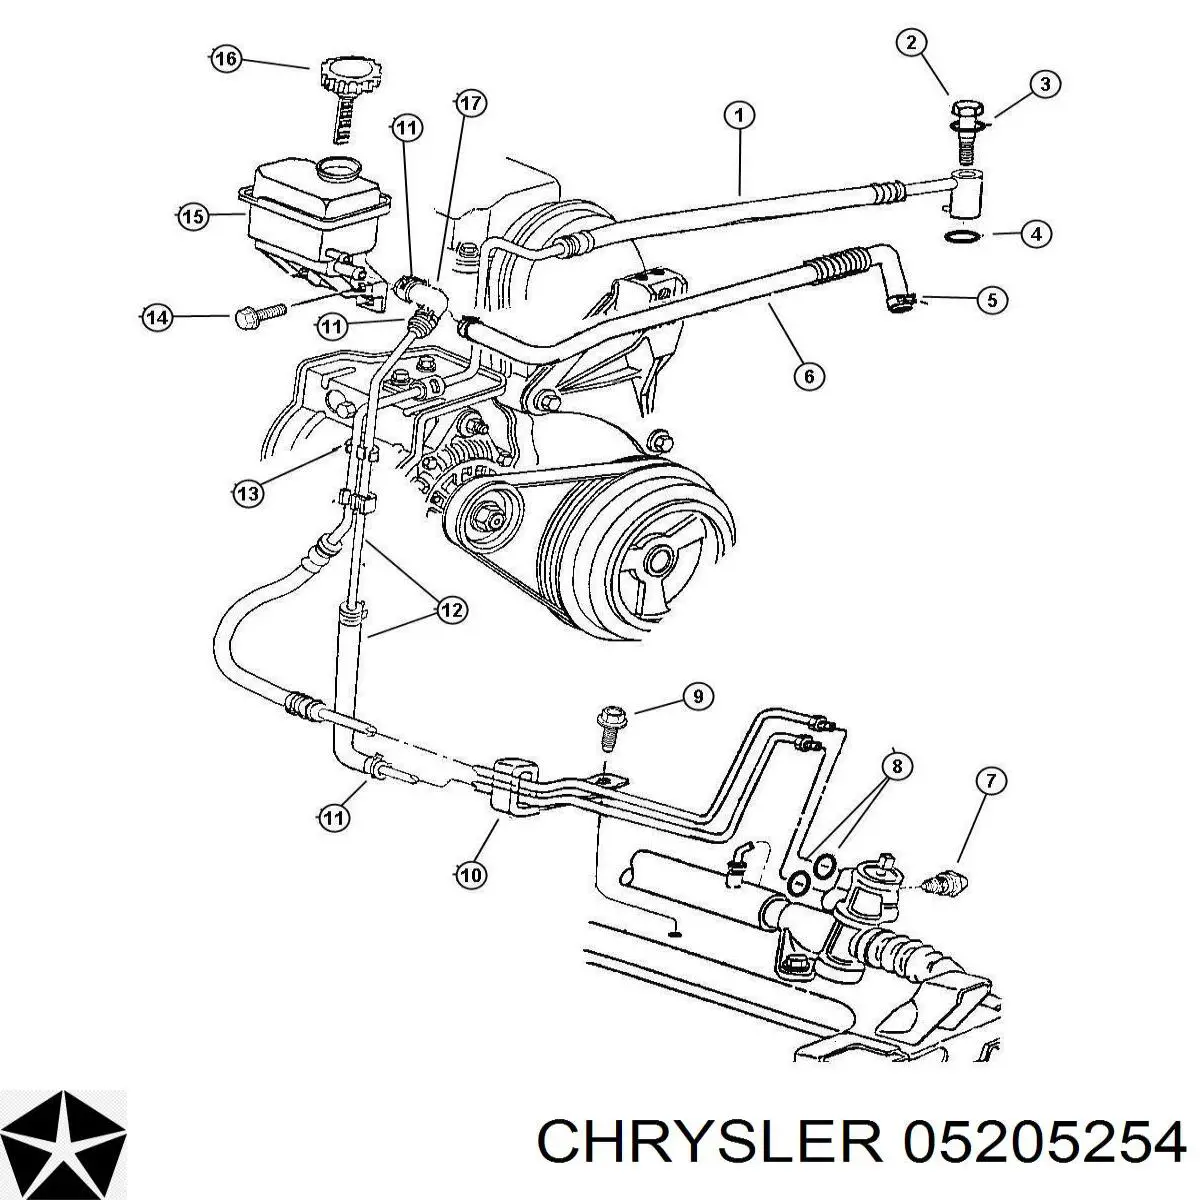 05205254 Chrysler 